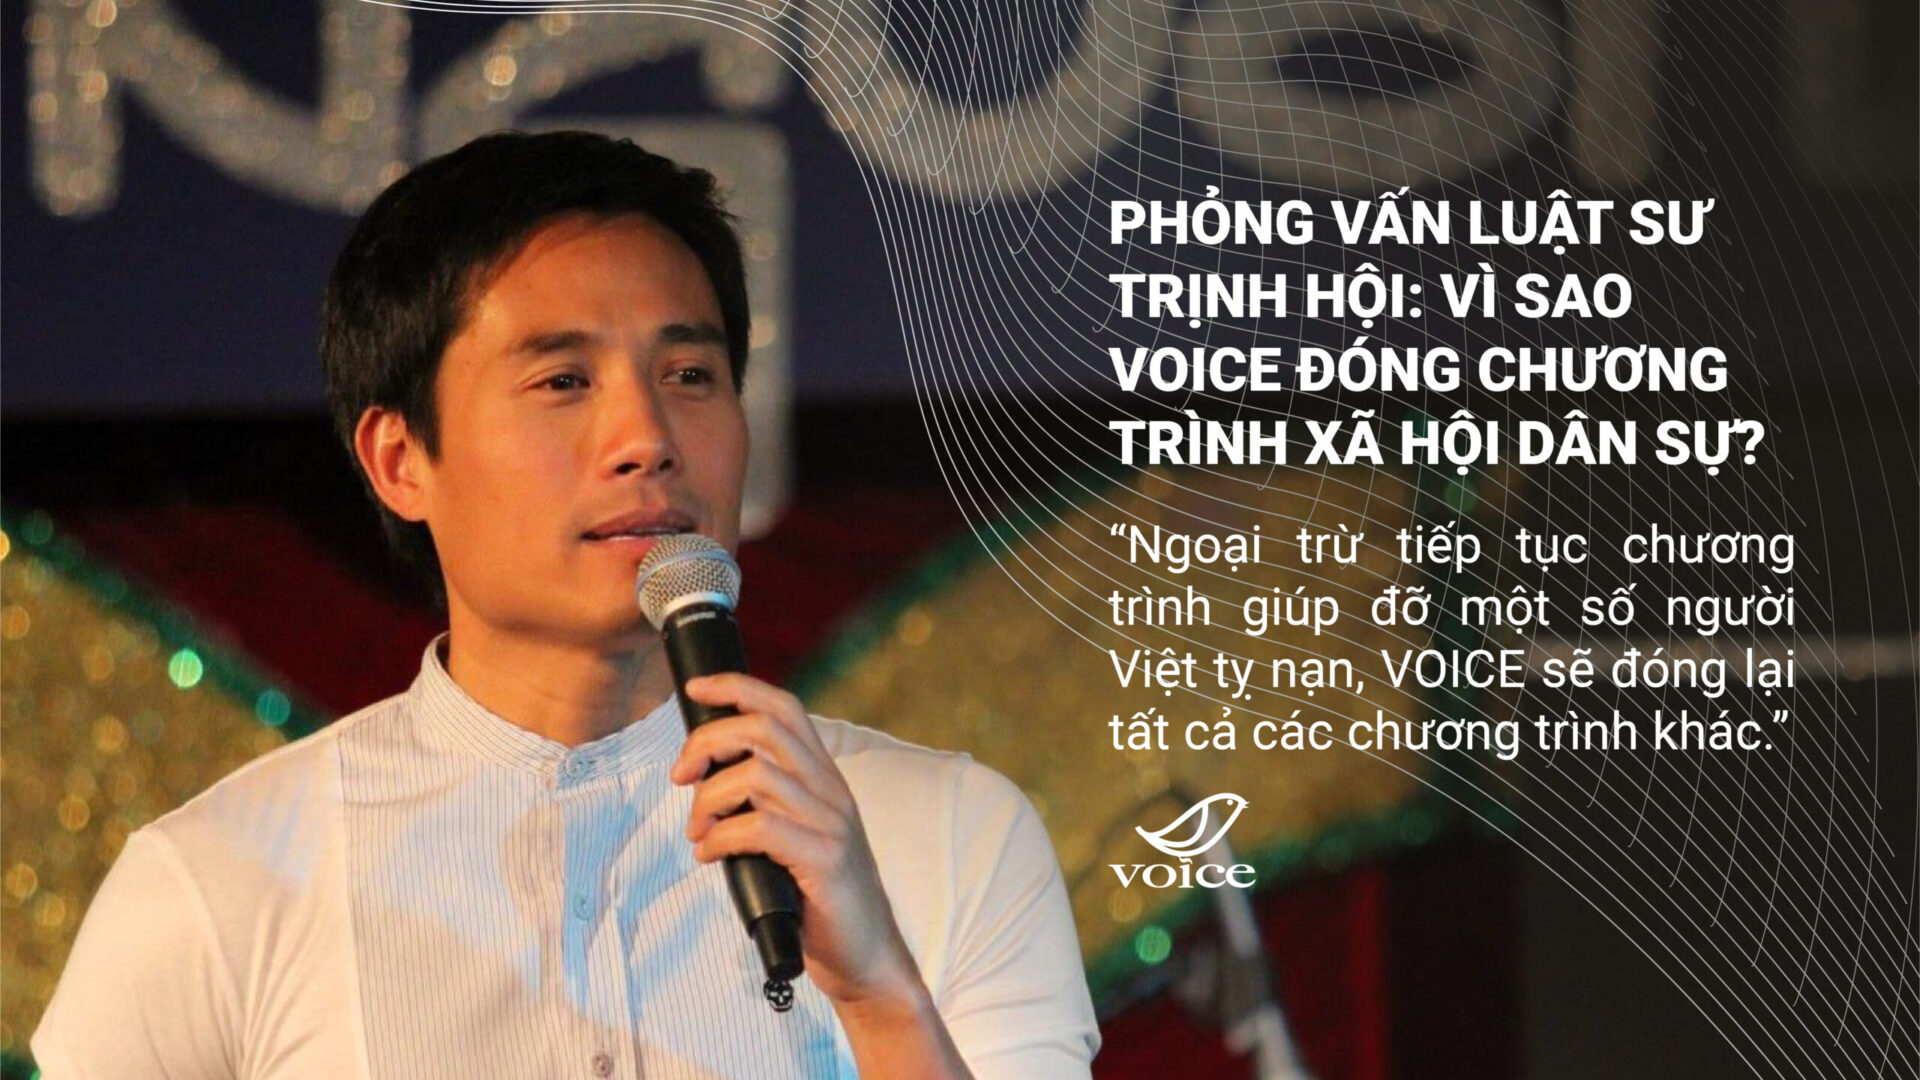 (Tiếng Việt) Phỏng vấn Luật sư Trịnh Hội: Vì sao VOICE đóng chương trình Xã hội Dân sự?